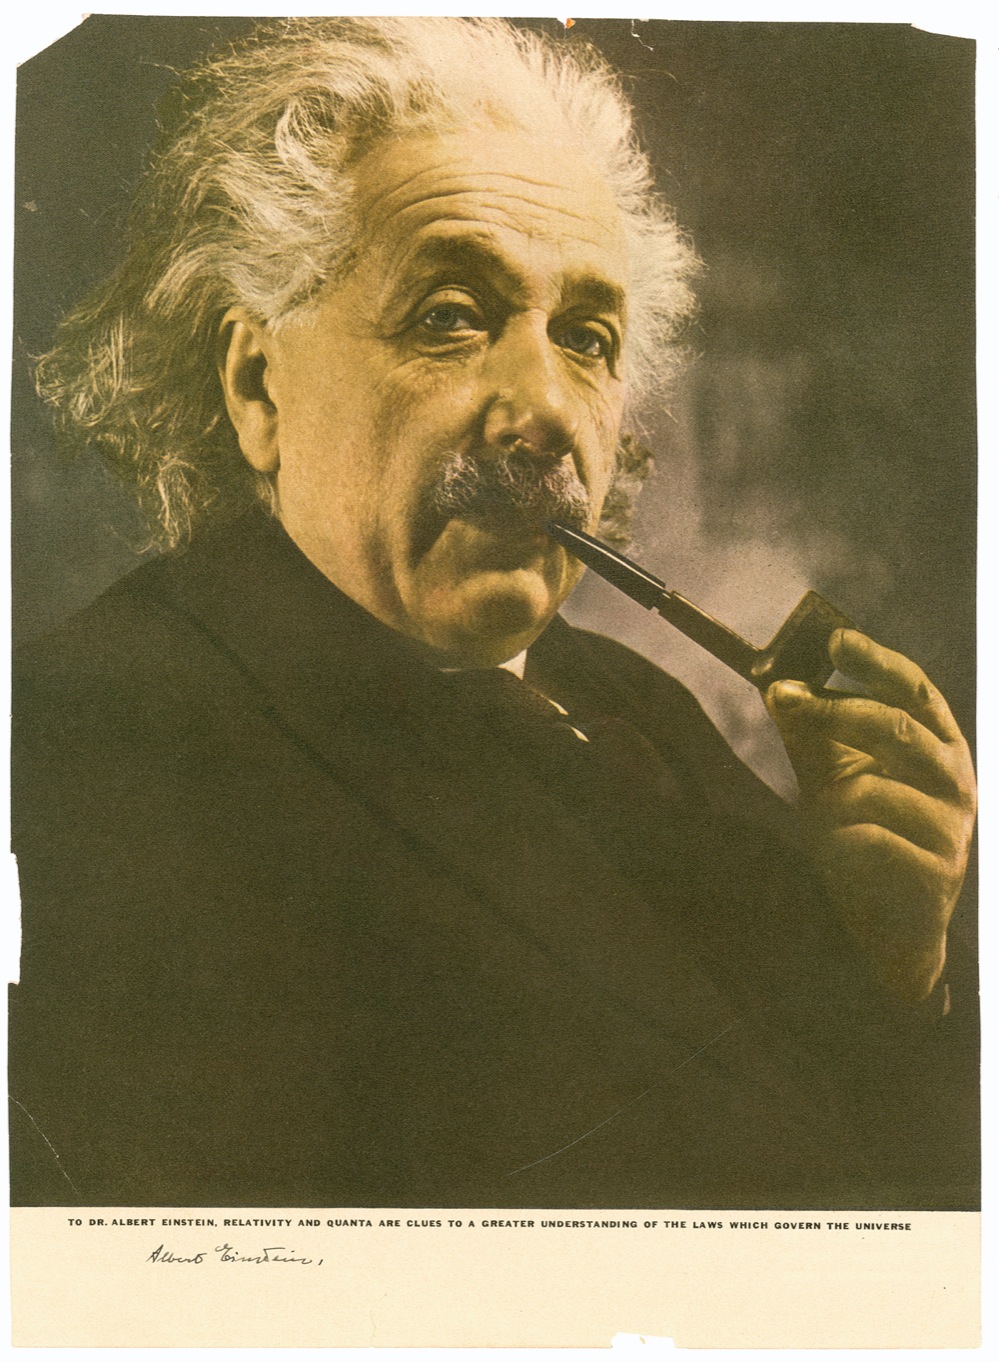 Lot #188 Albert Einstein